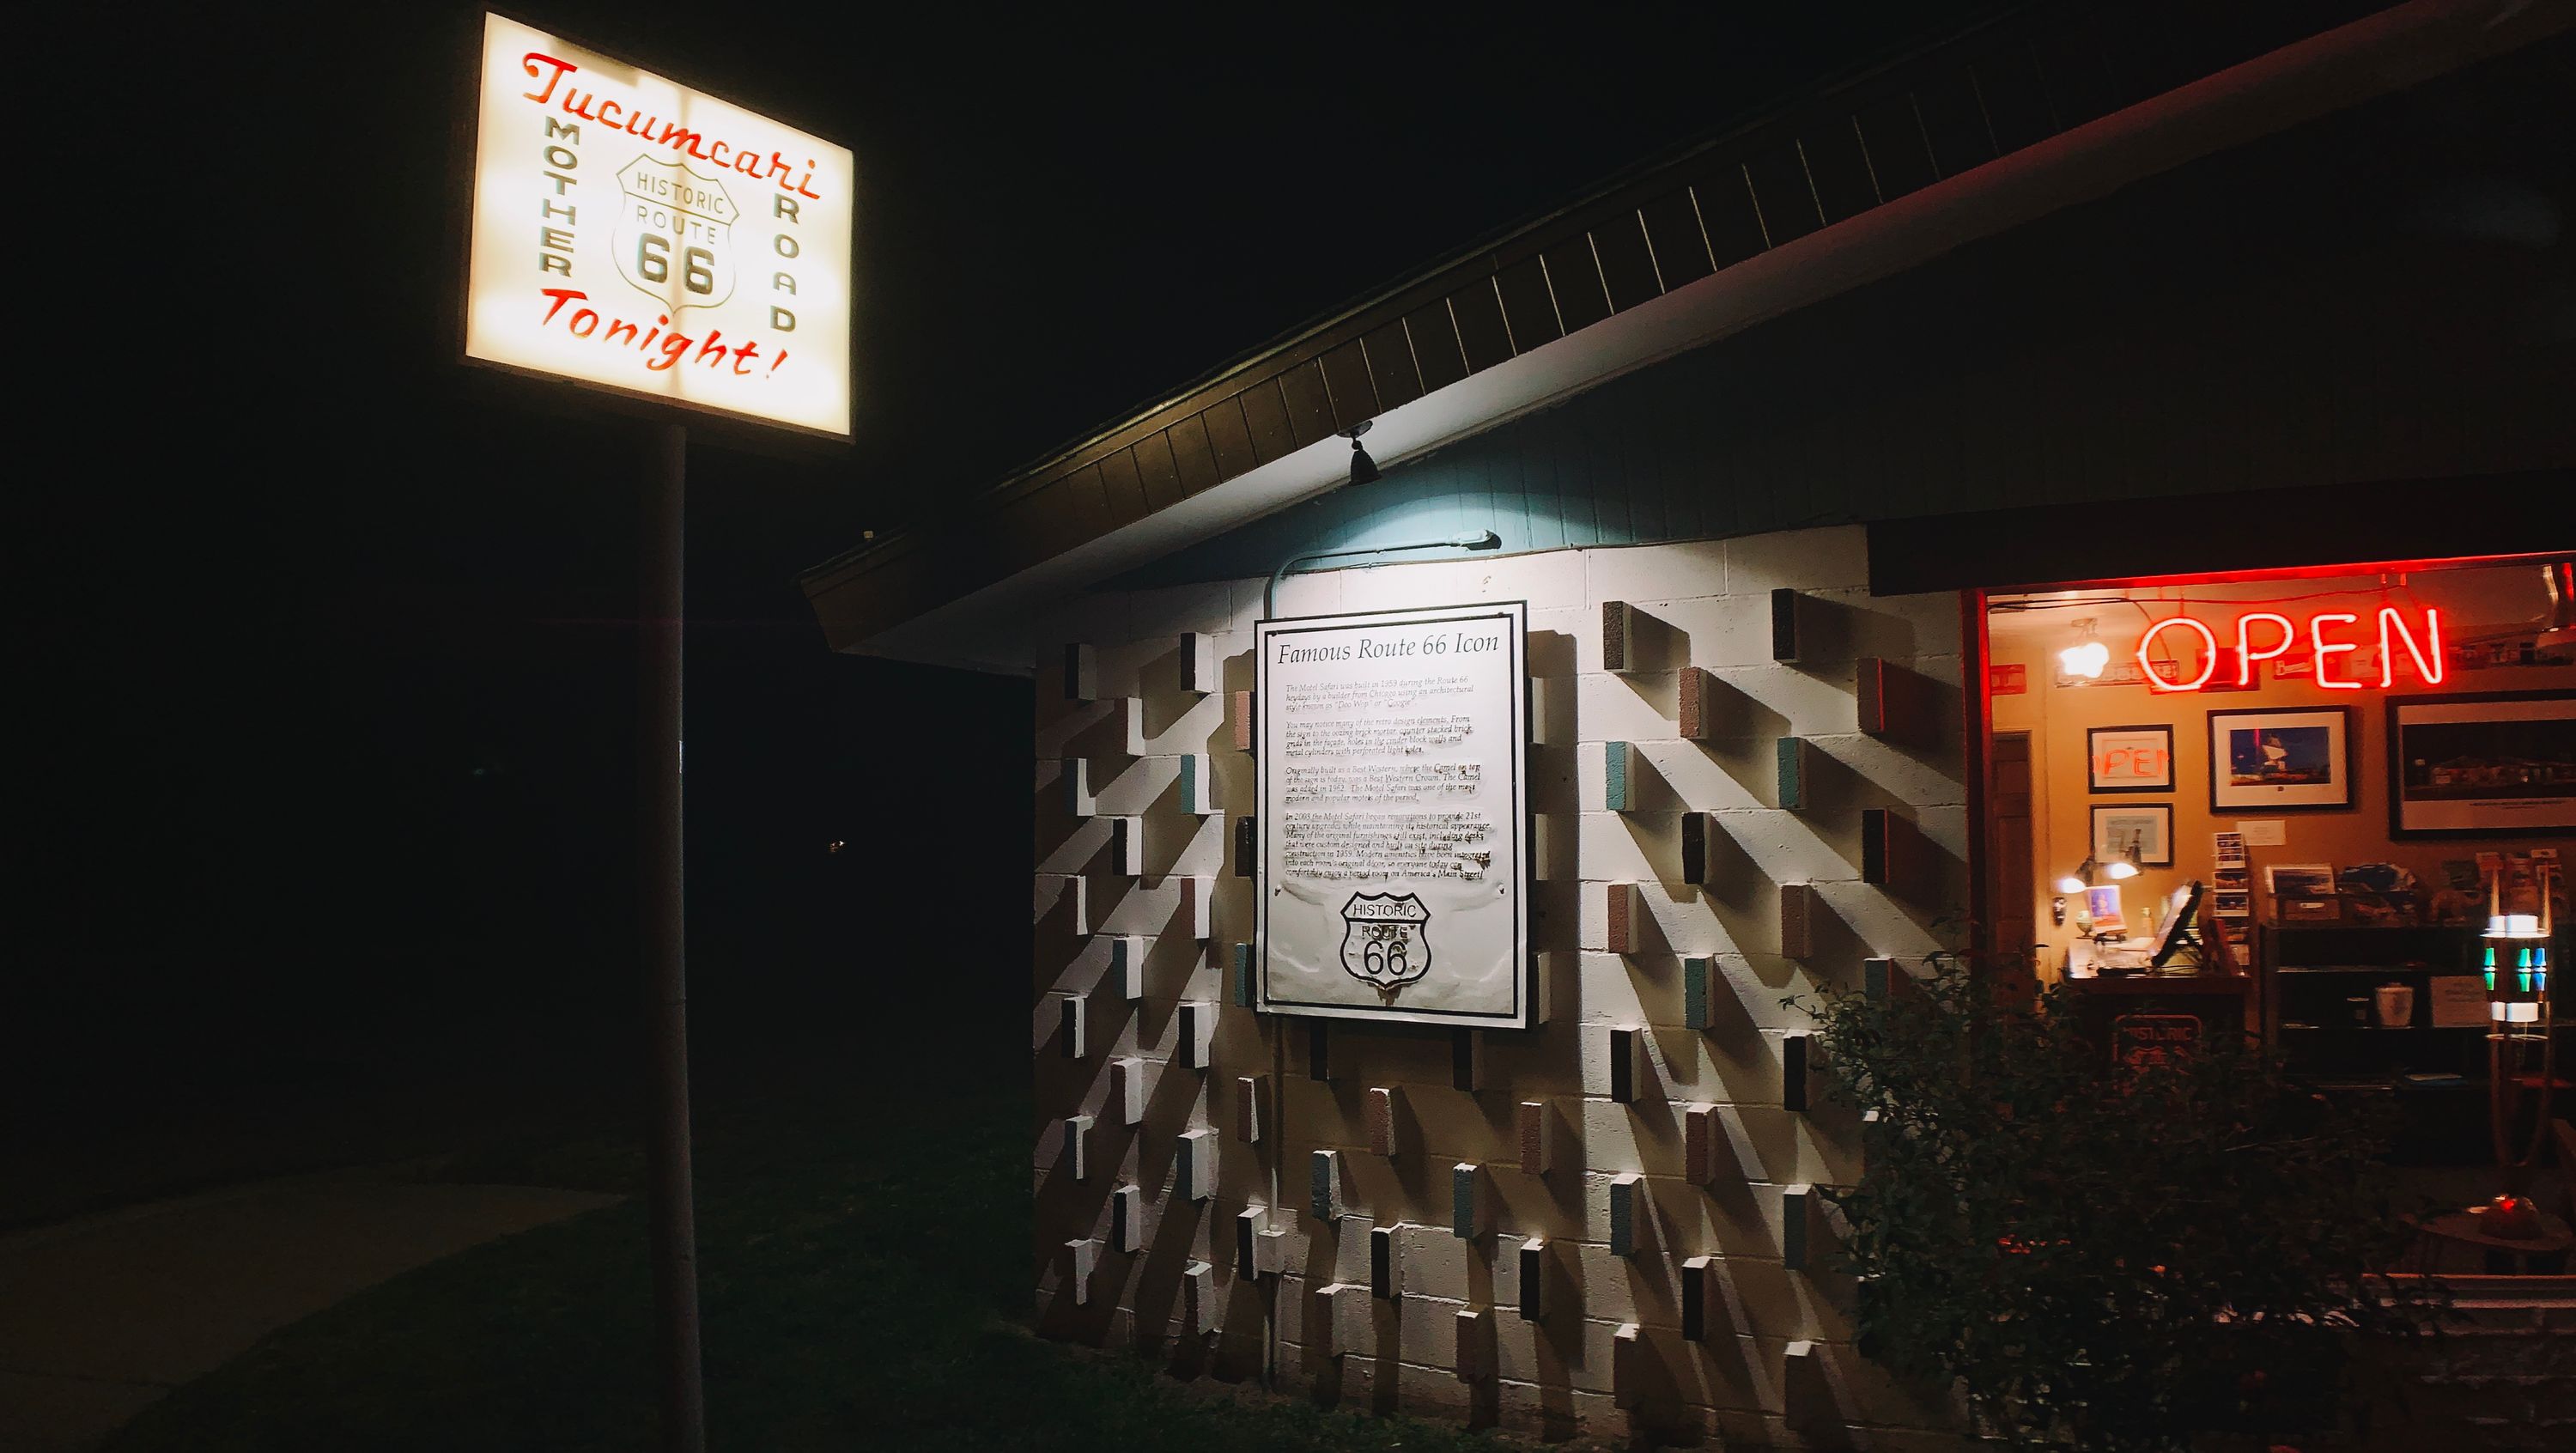 Motel Safari in Tucumcari, NM